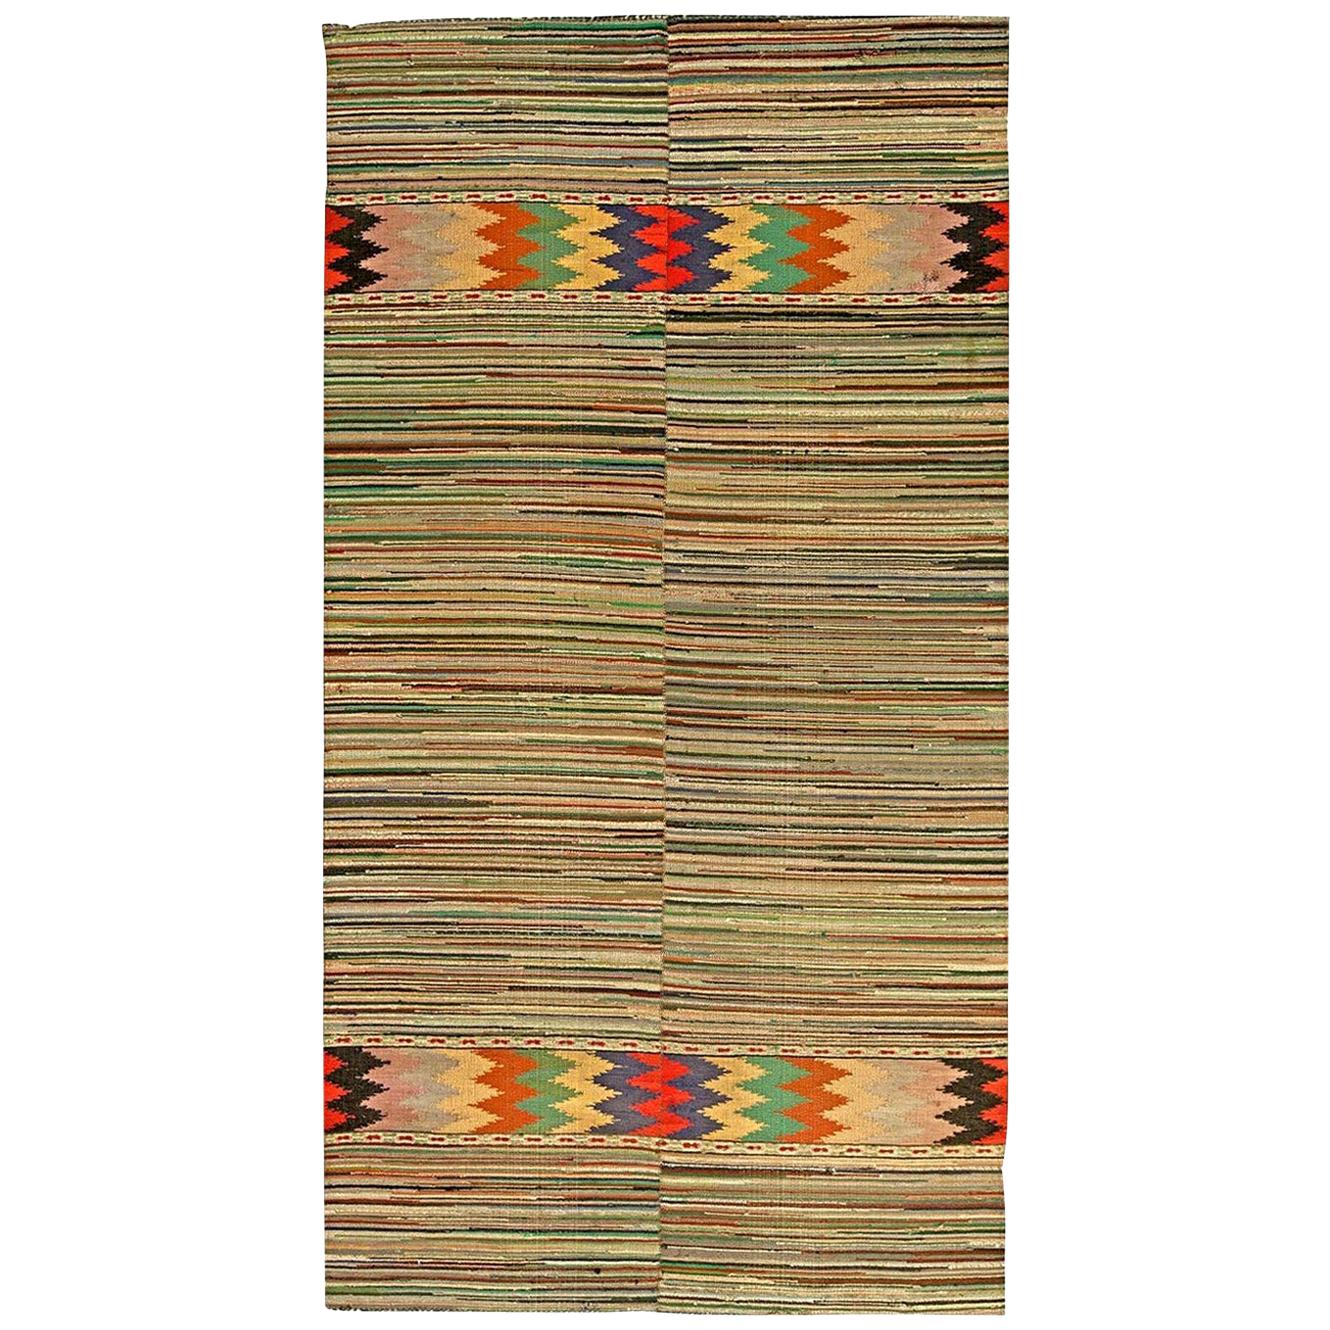 Midcentury Geometric Handmade Wool American Rag Rug in Red, Blue, Brown, Yellow